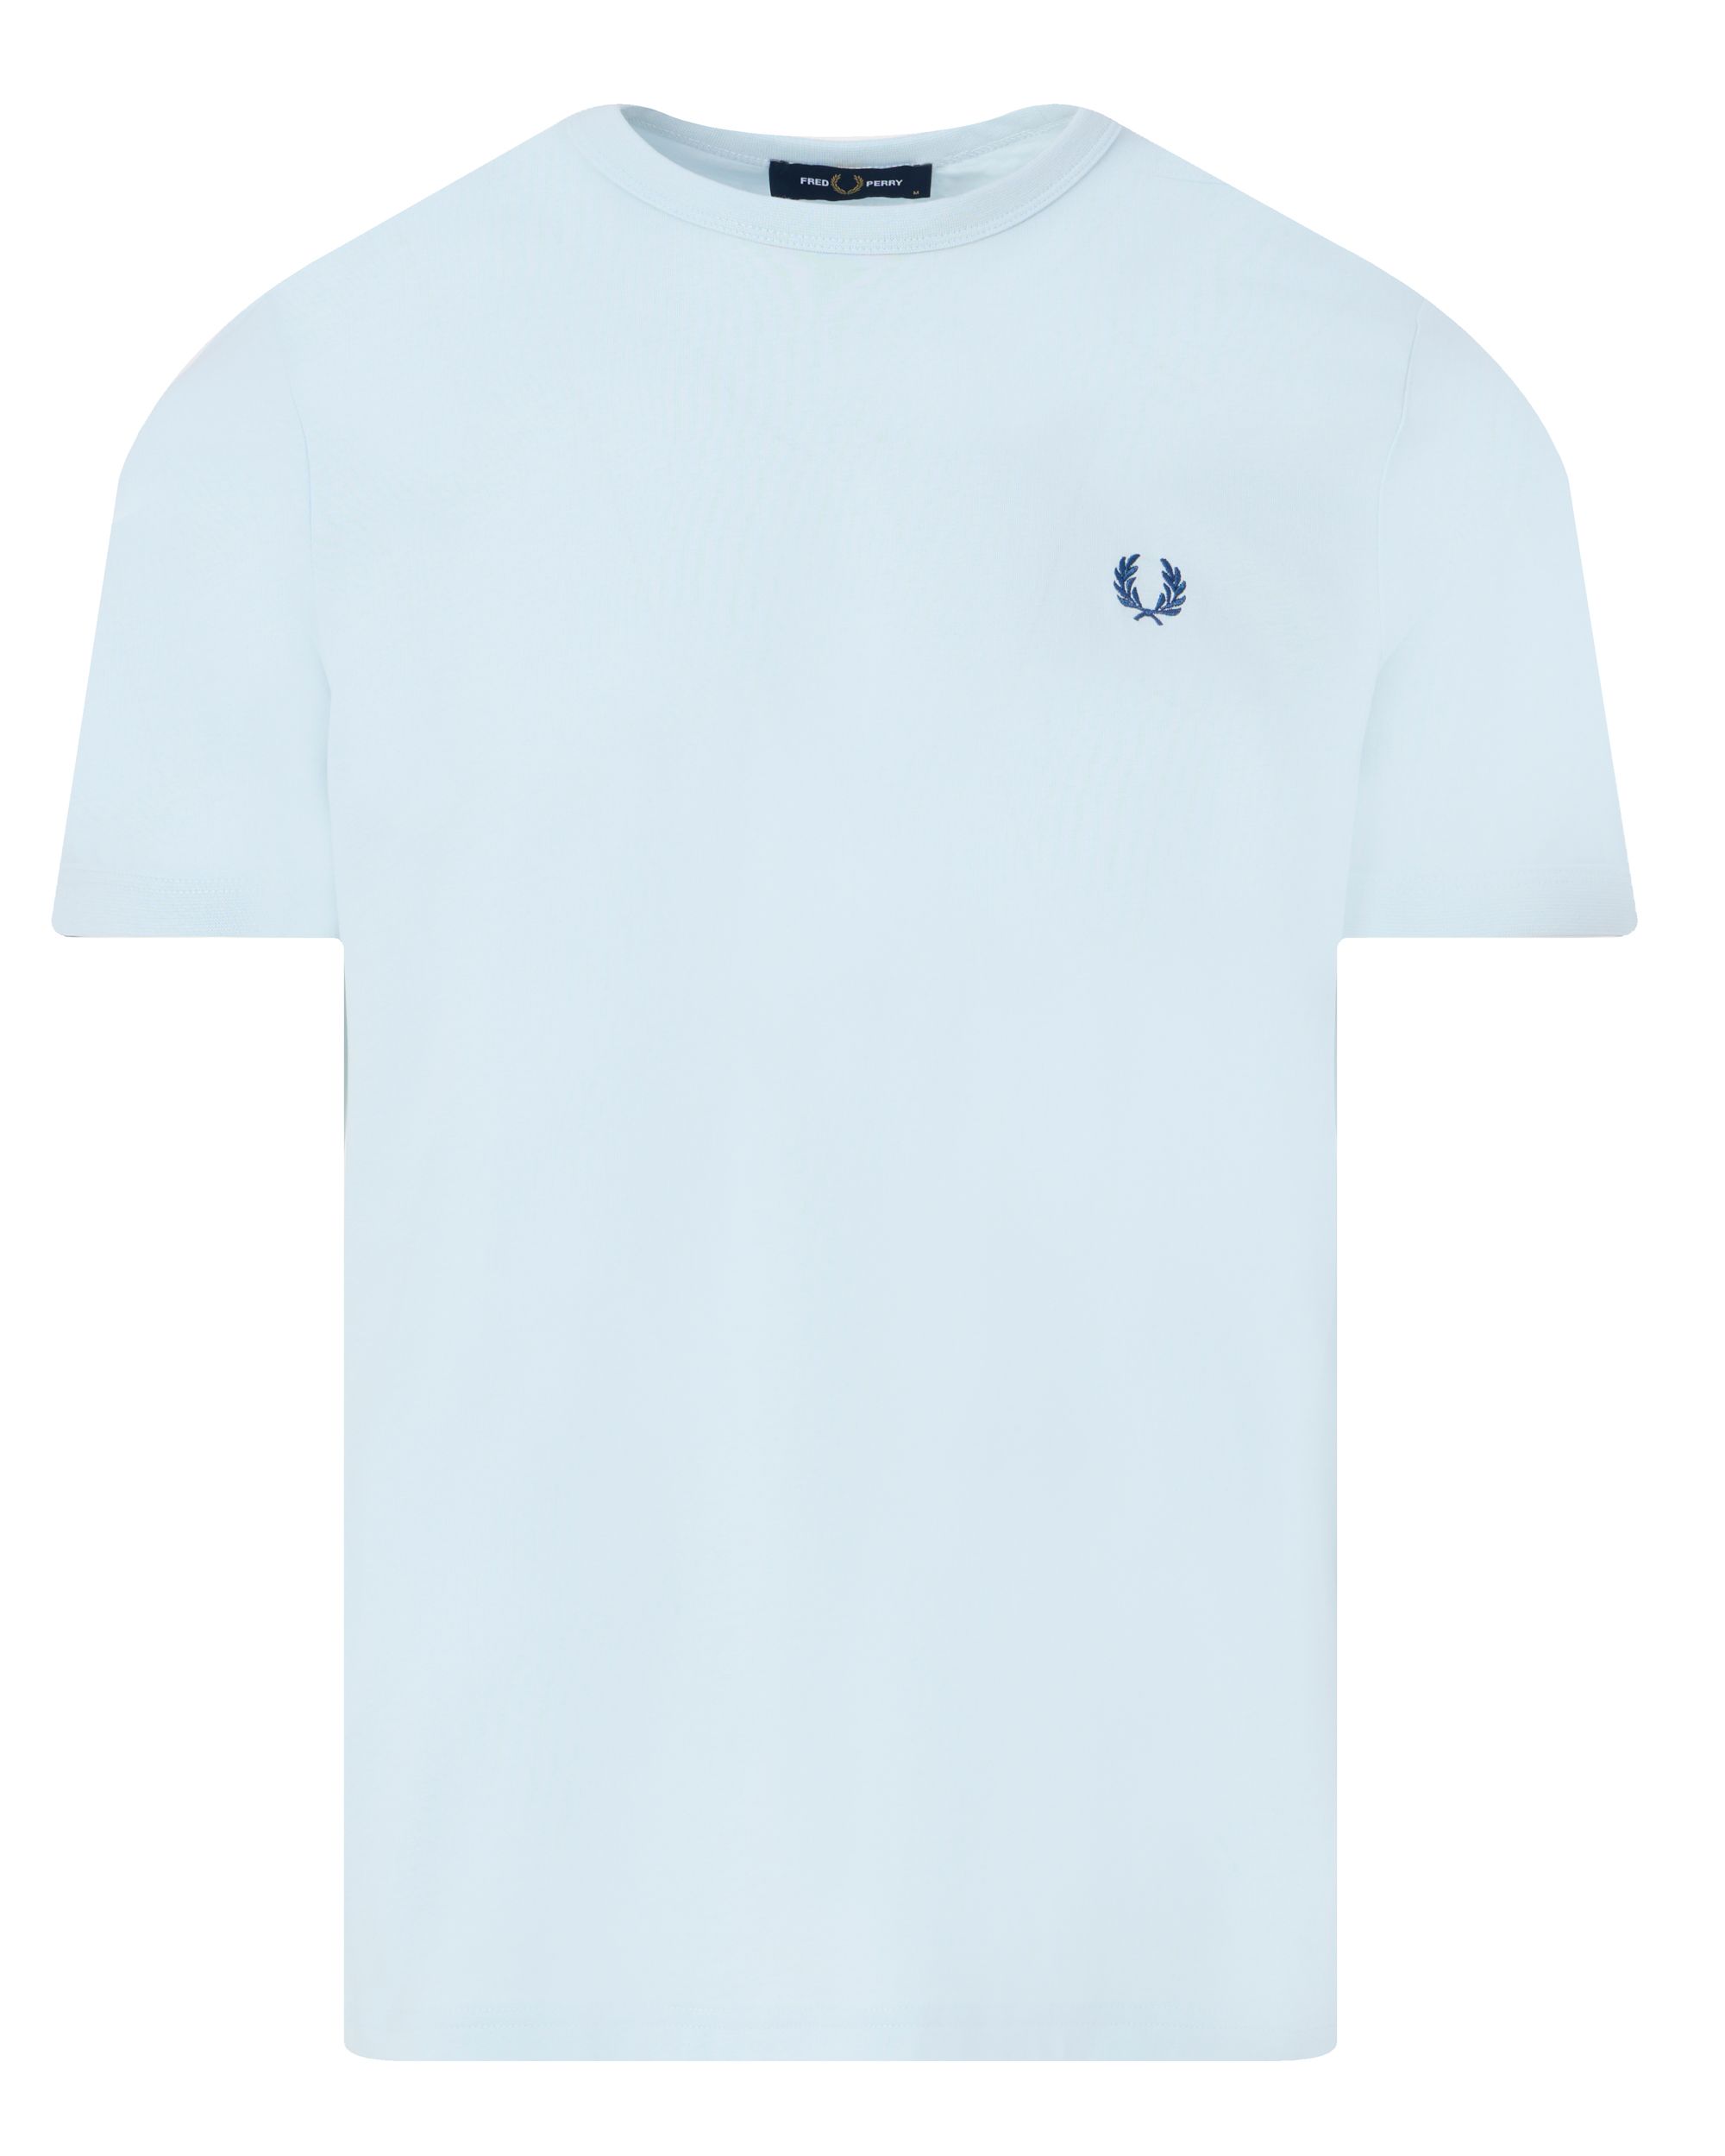 Fred Perry T-shirt KM Licht blauw 091948-001-XXXL